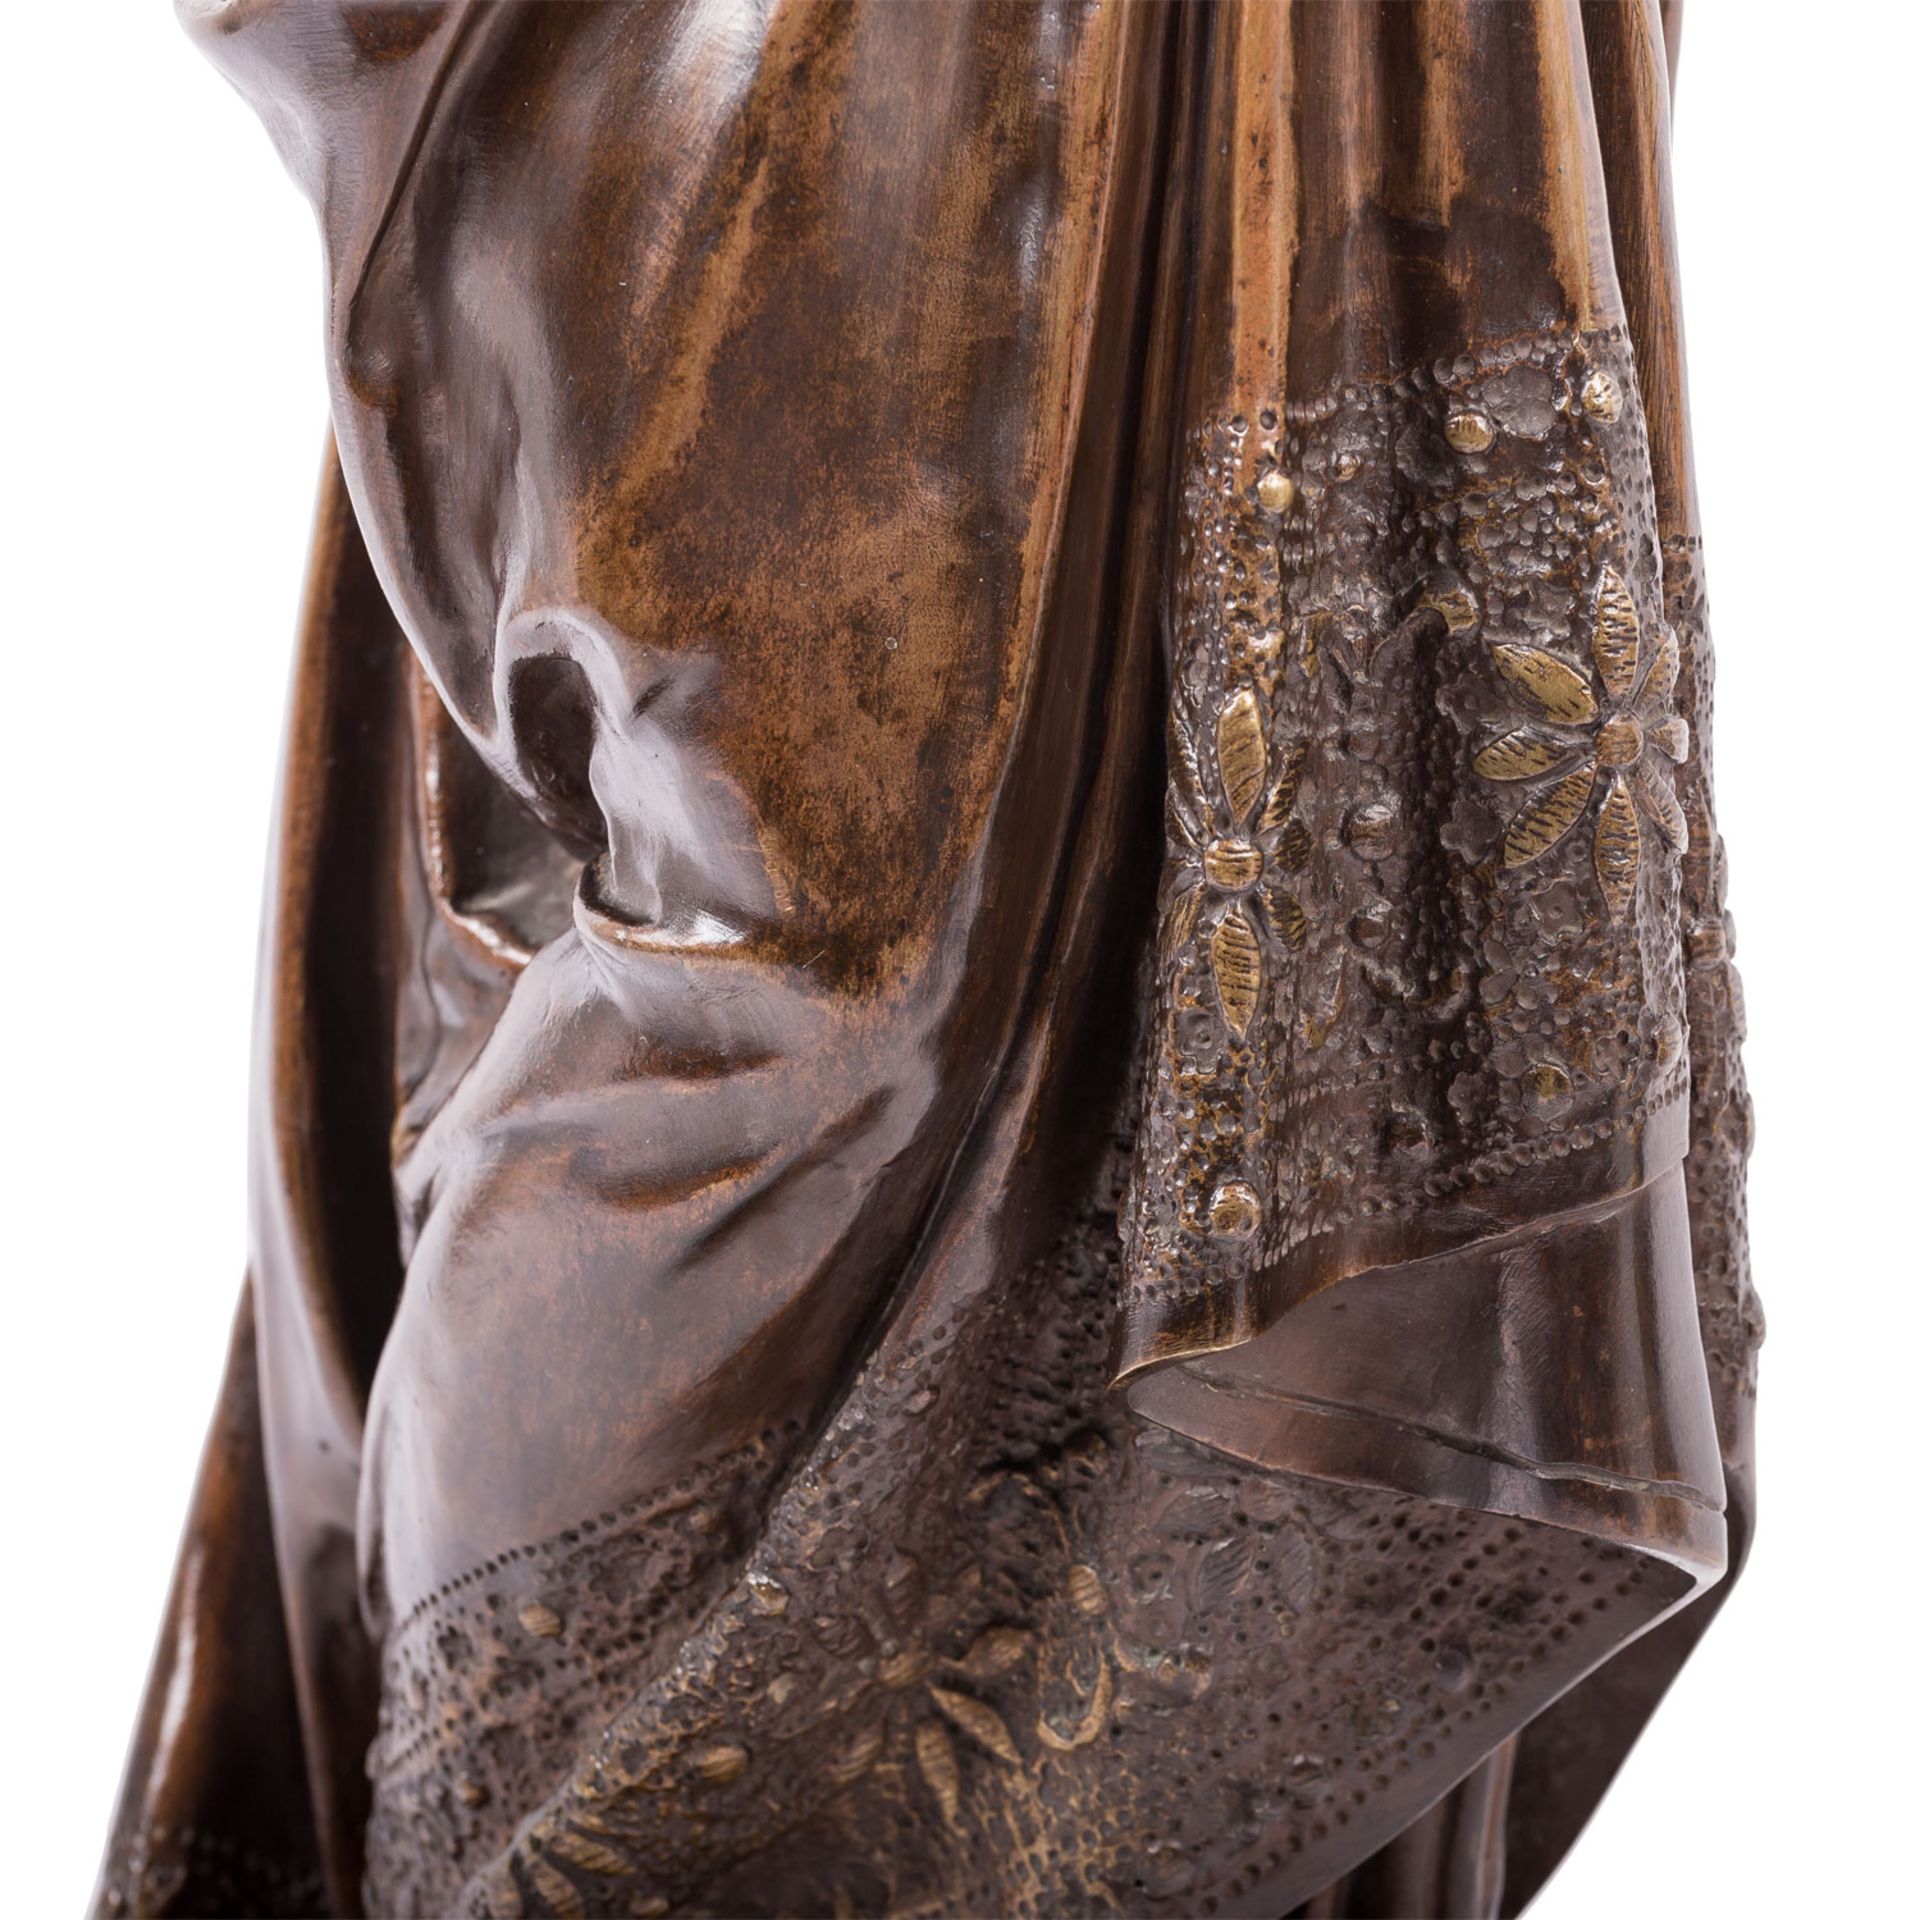 CARRIER-BELLEUSE, ALBERT ERNST (1824-1887) herausragende, große Bronzefigur "La Liseuse" - Bild 7 aus 10